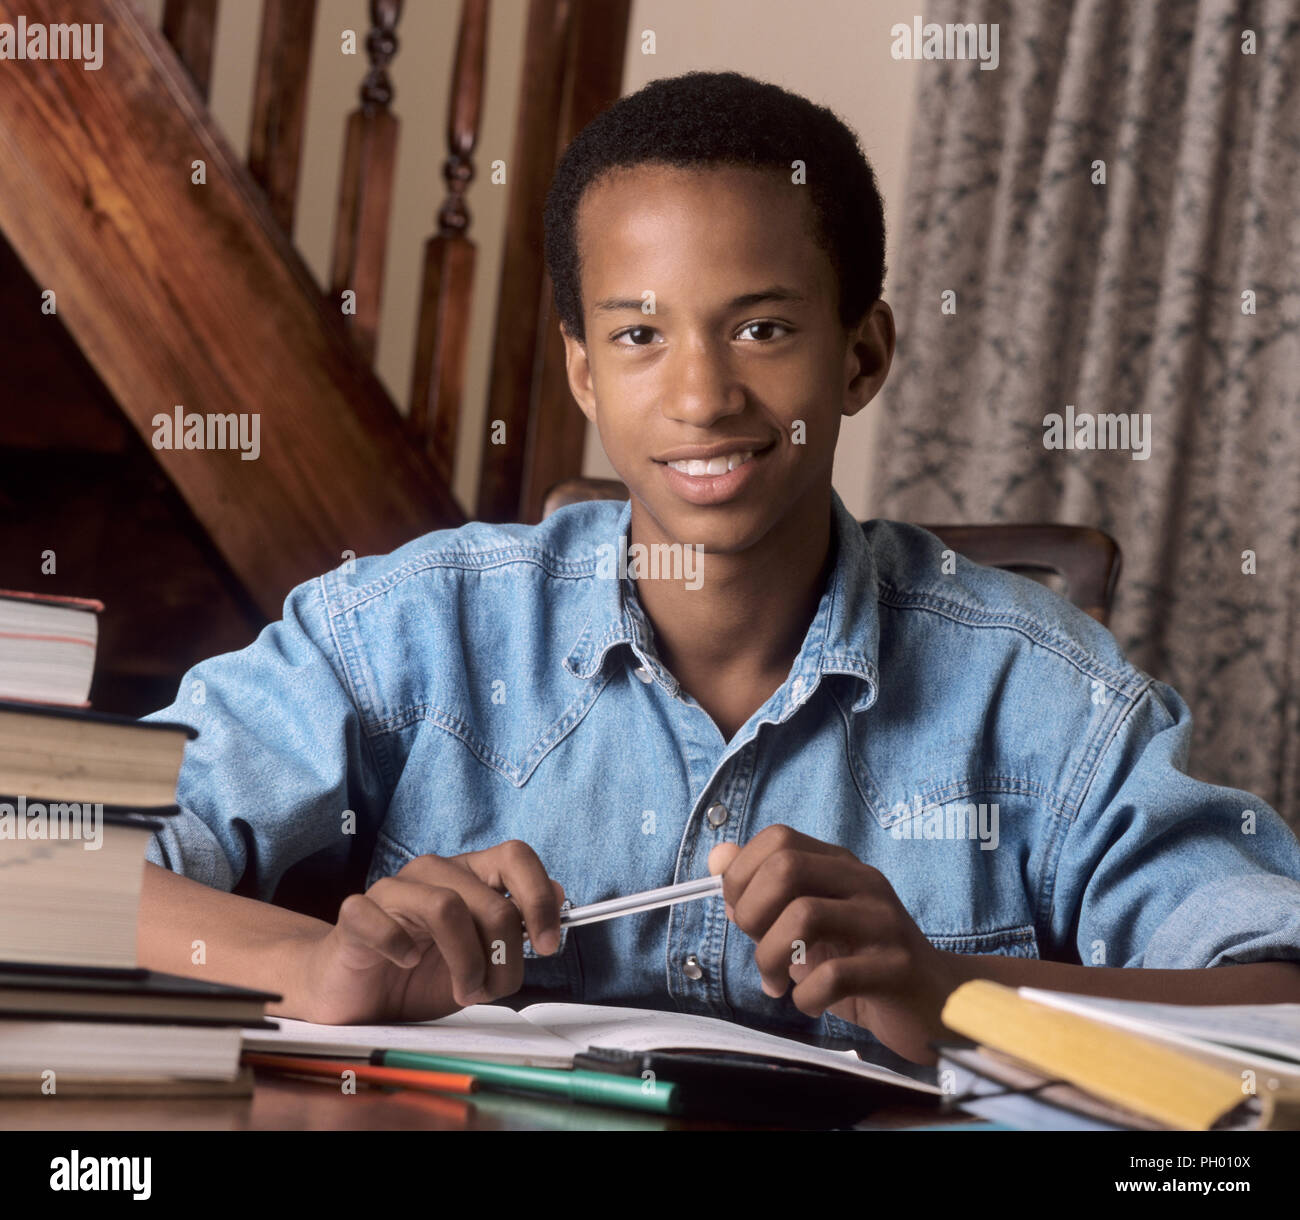 Compiti di studio e di lavoro teenage 15-17 anni British nero Africa, Caraibi schoolboy bello sorridente sicuri a svolgere i suoi compiti di revisione esame a casa Foto Stock